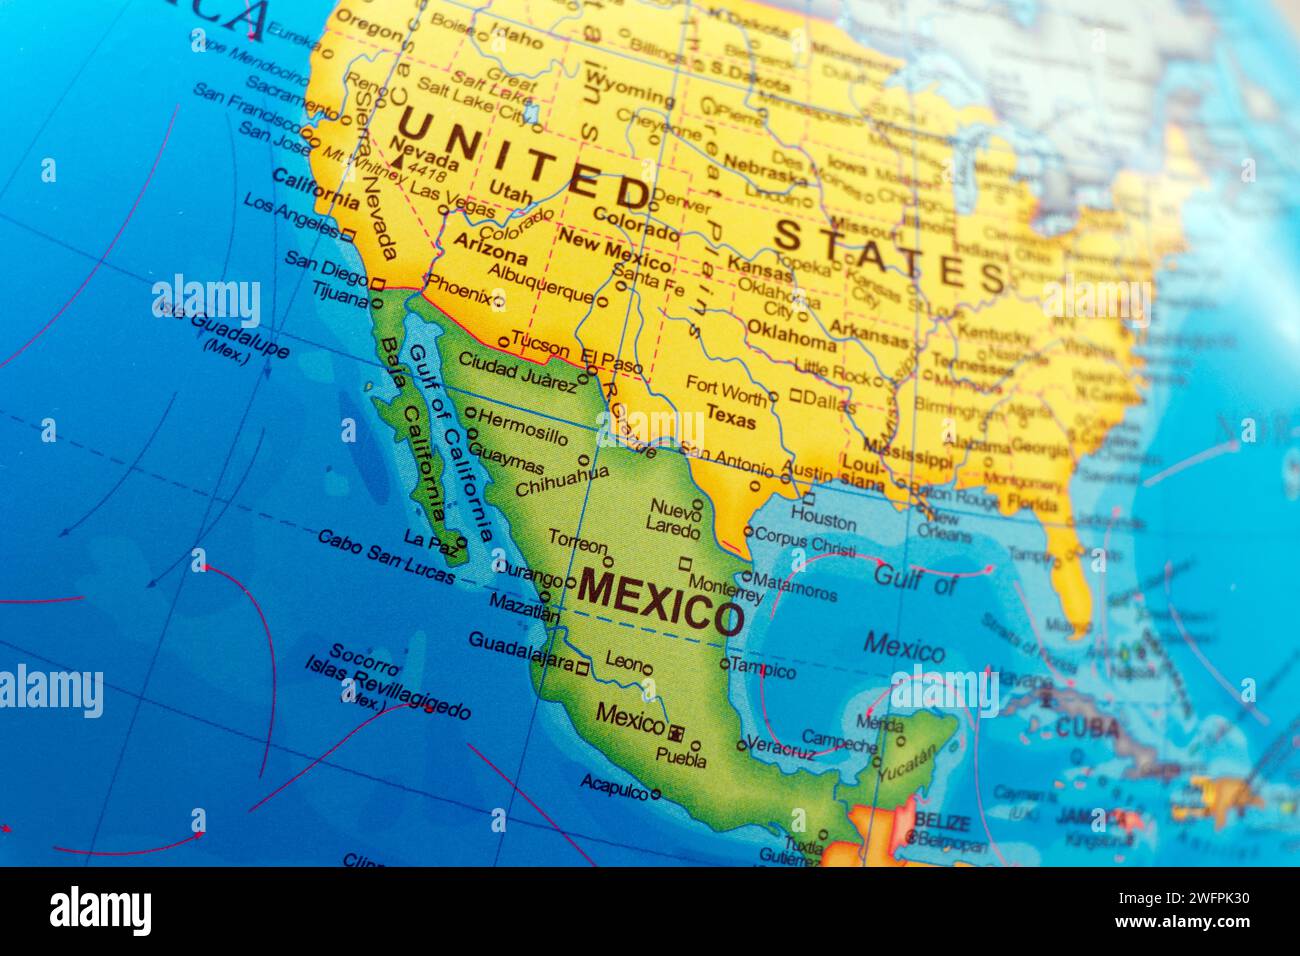 Karte der vereinigten staaten von amerika und mexiko oder atlas Grenze zu virginia, alabama, New york, washington, carolina, florida, georgia und orlando in der Nähe Stockfoto